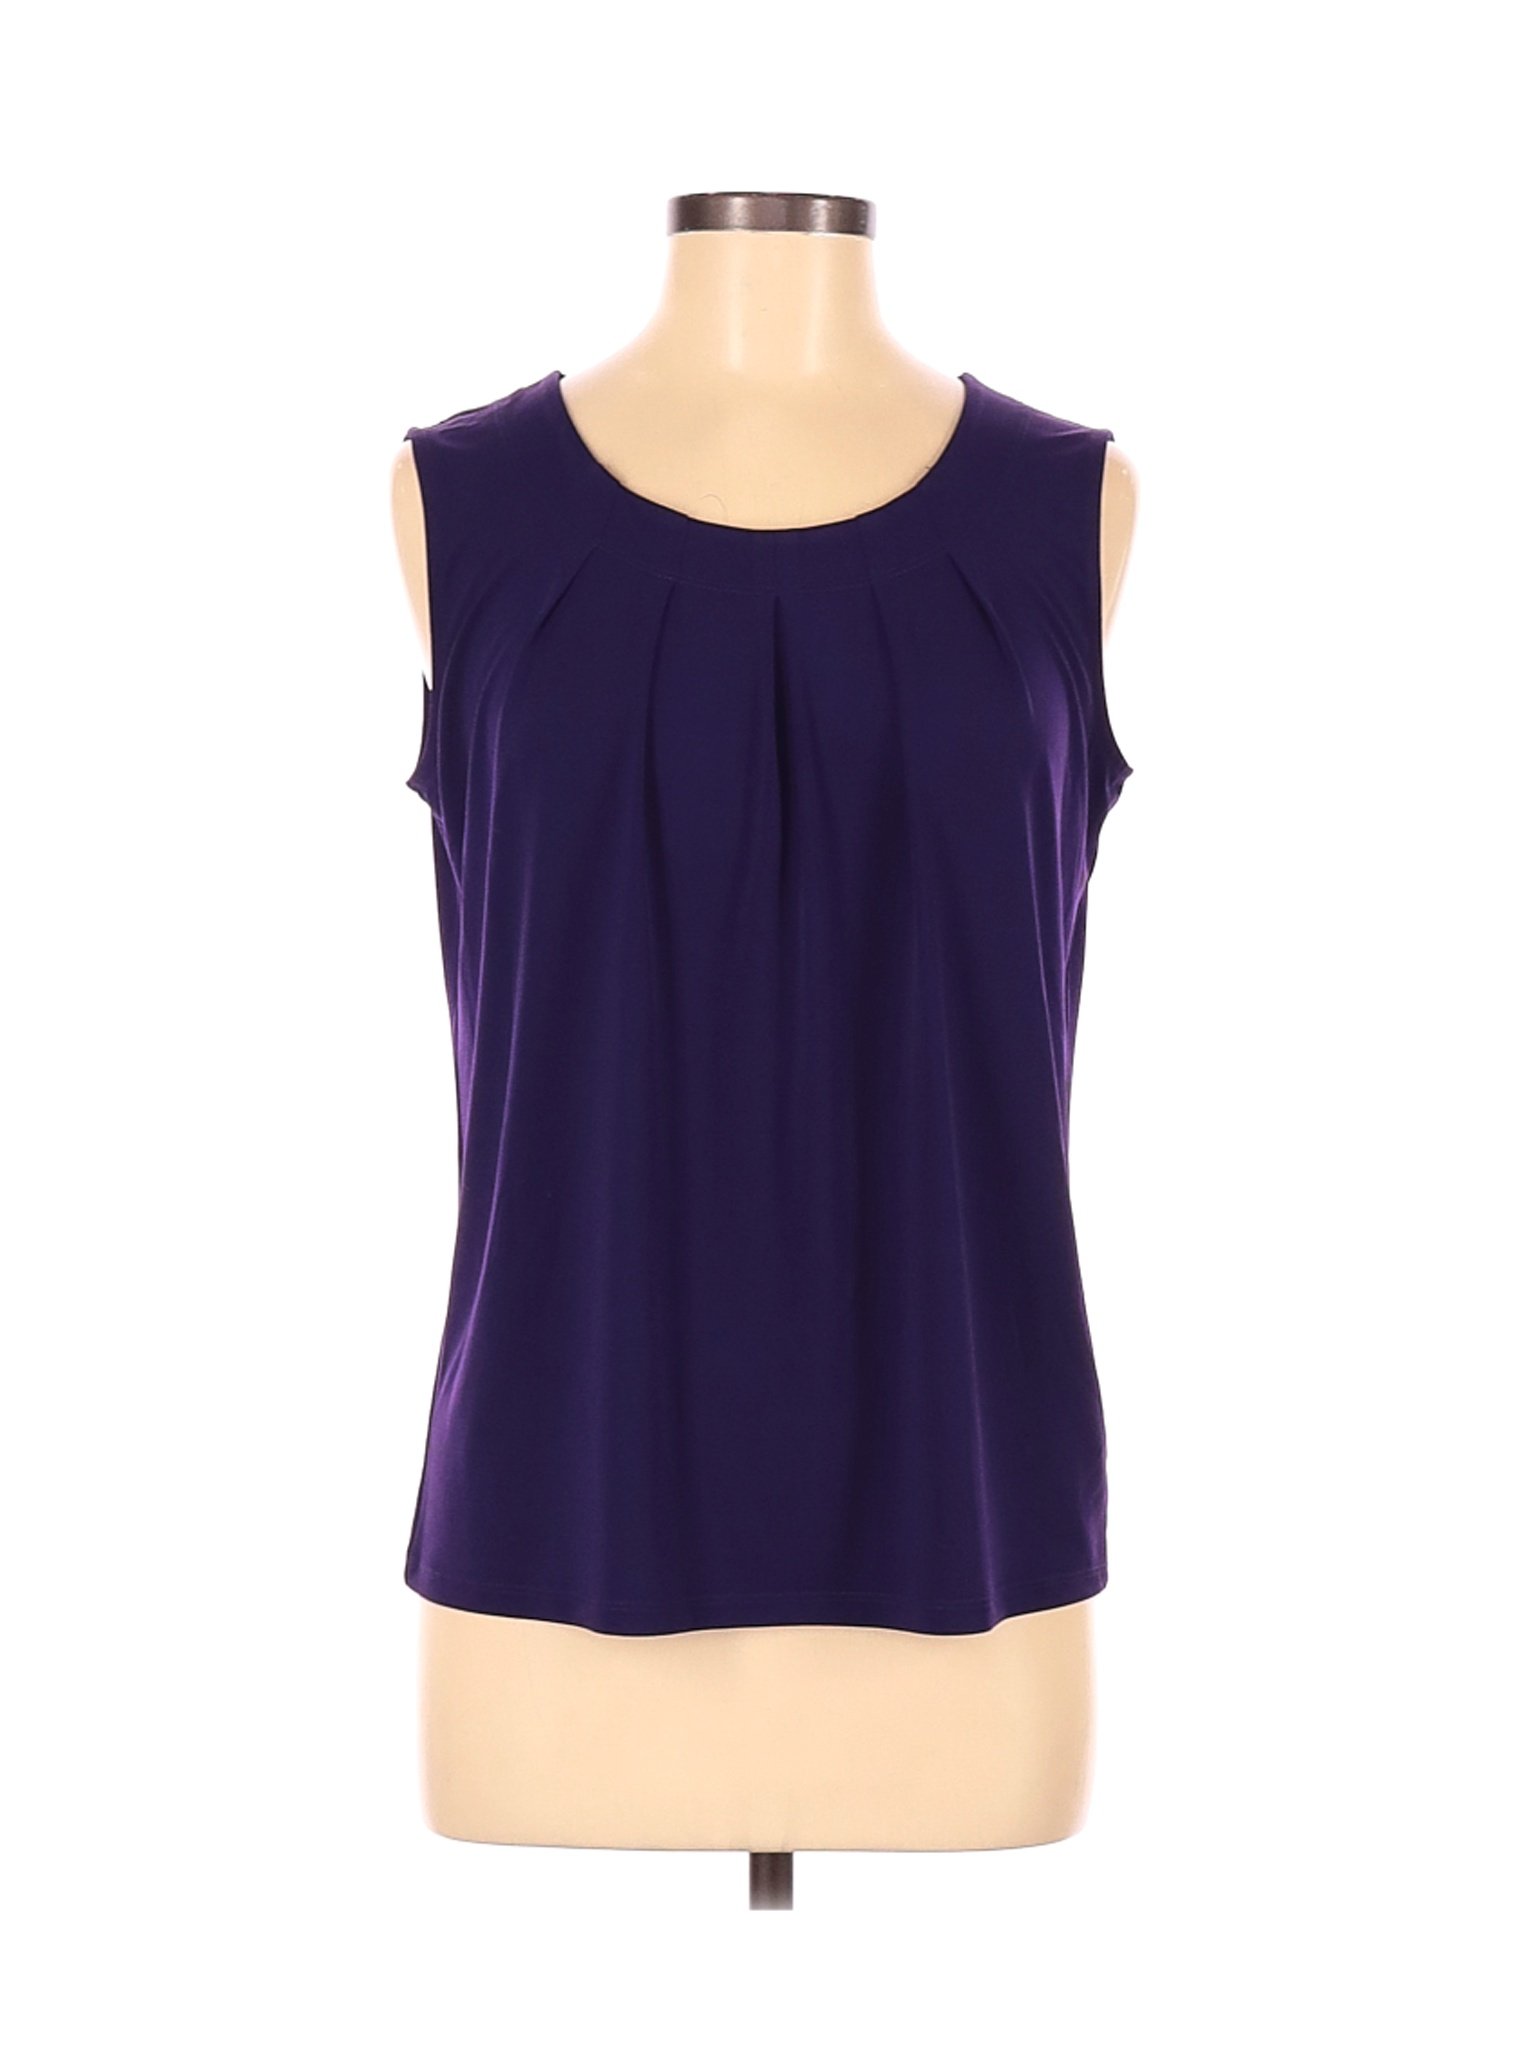 Kasper Women Purple Sleeveless Top M | eBay